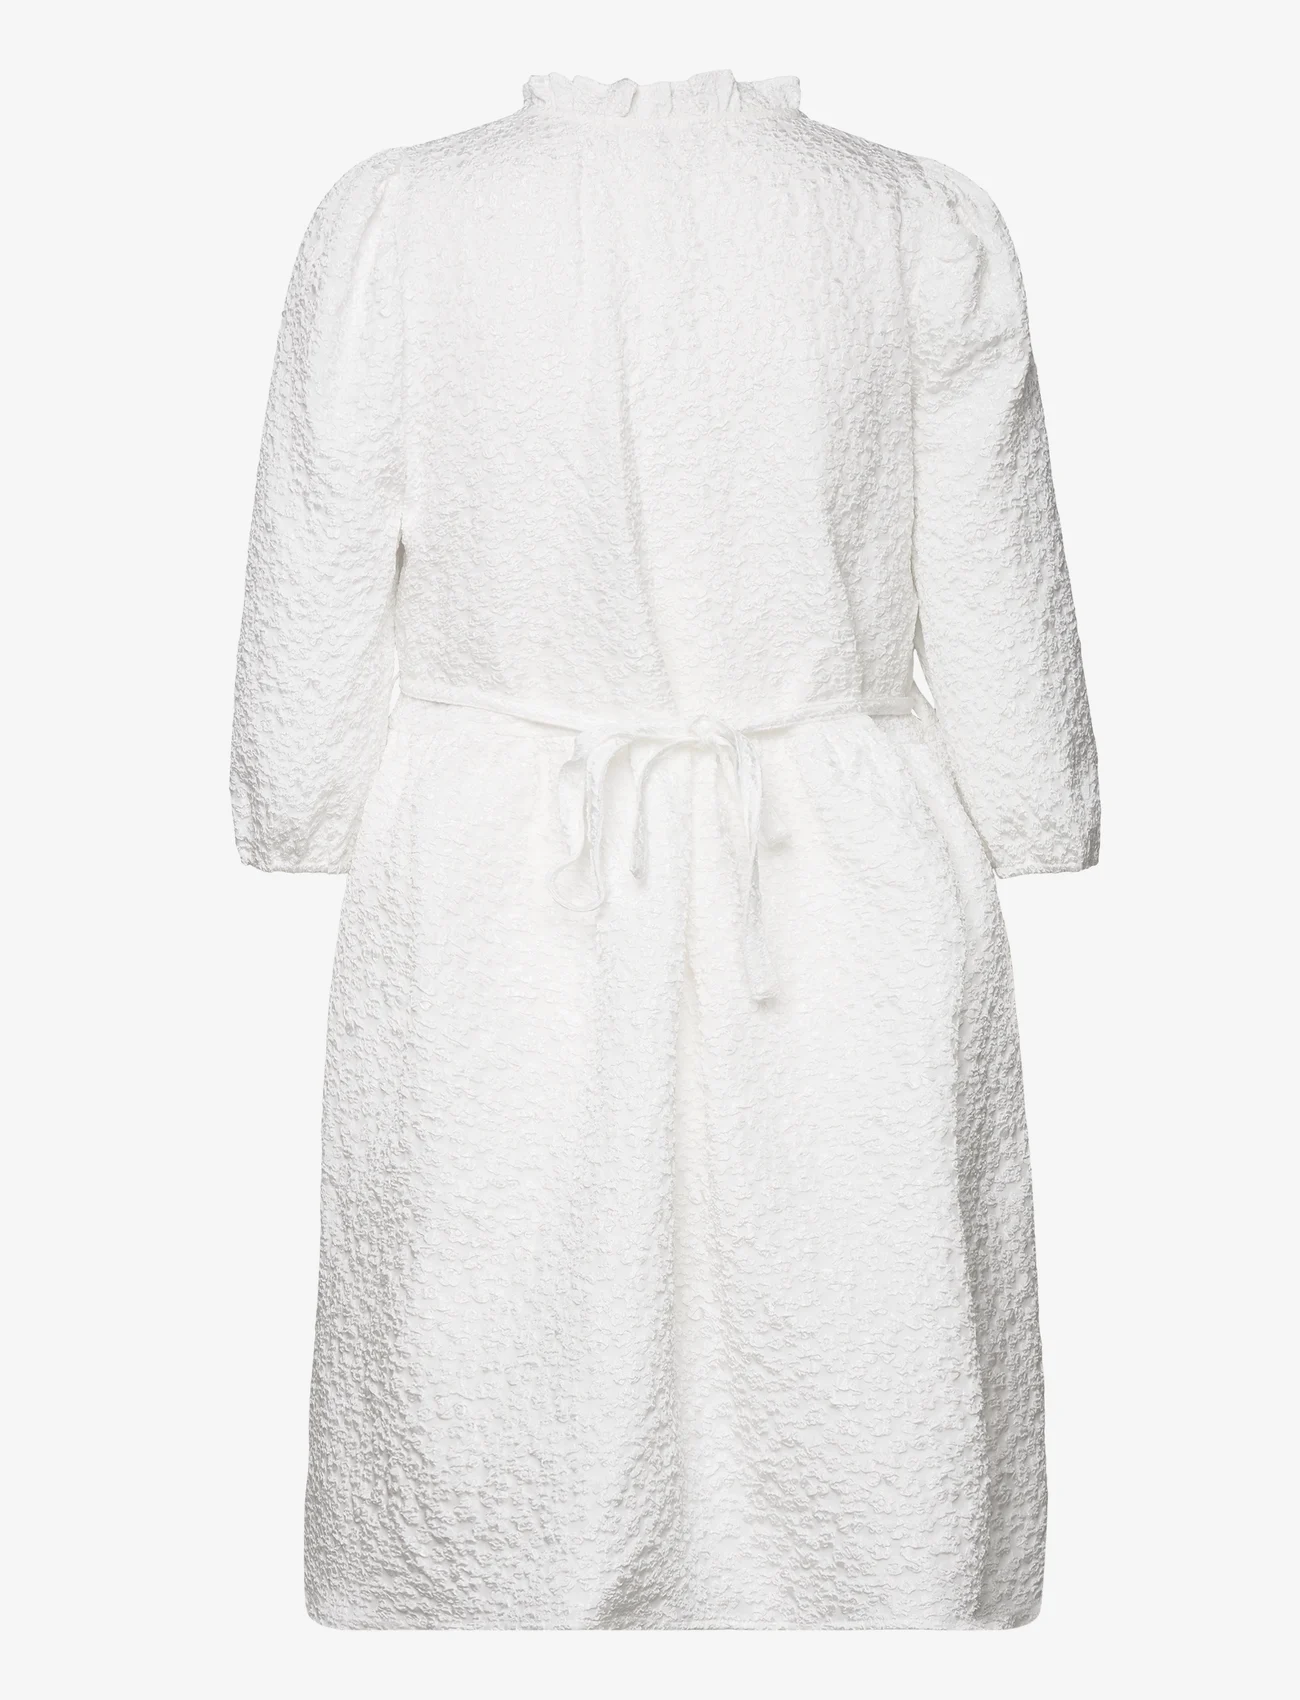 A-View - Mica dress - sommerkjoler - white - 1